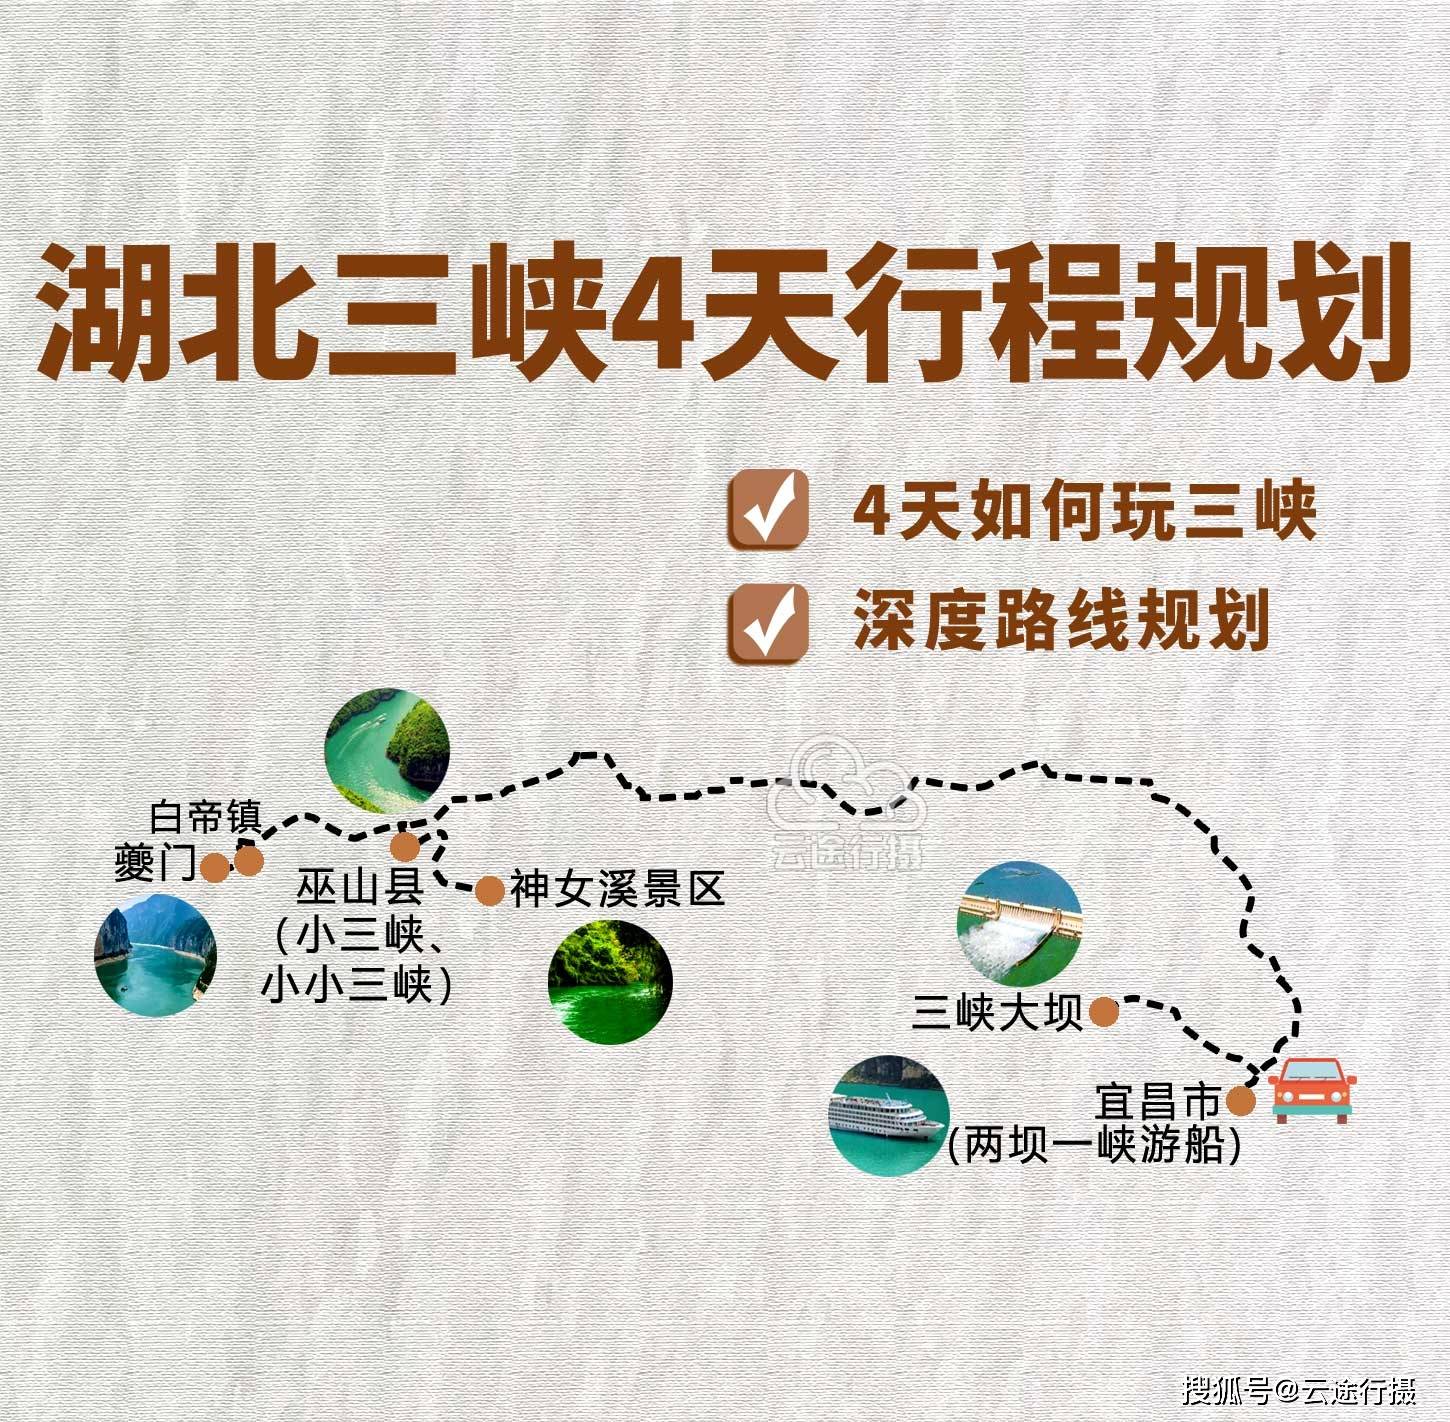 奉节白帝城夔门,湖北宜昌三峡自驾游自由行深度线路规划